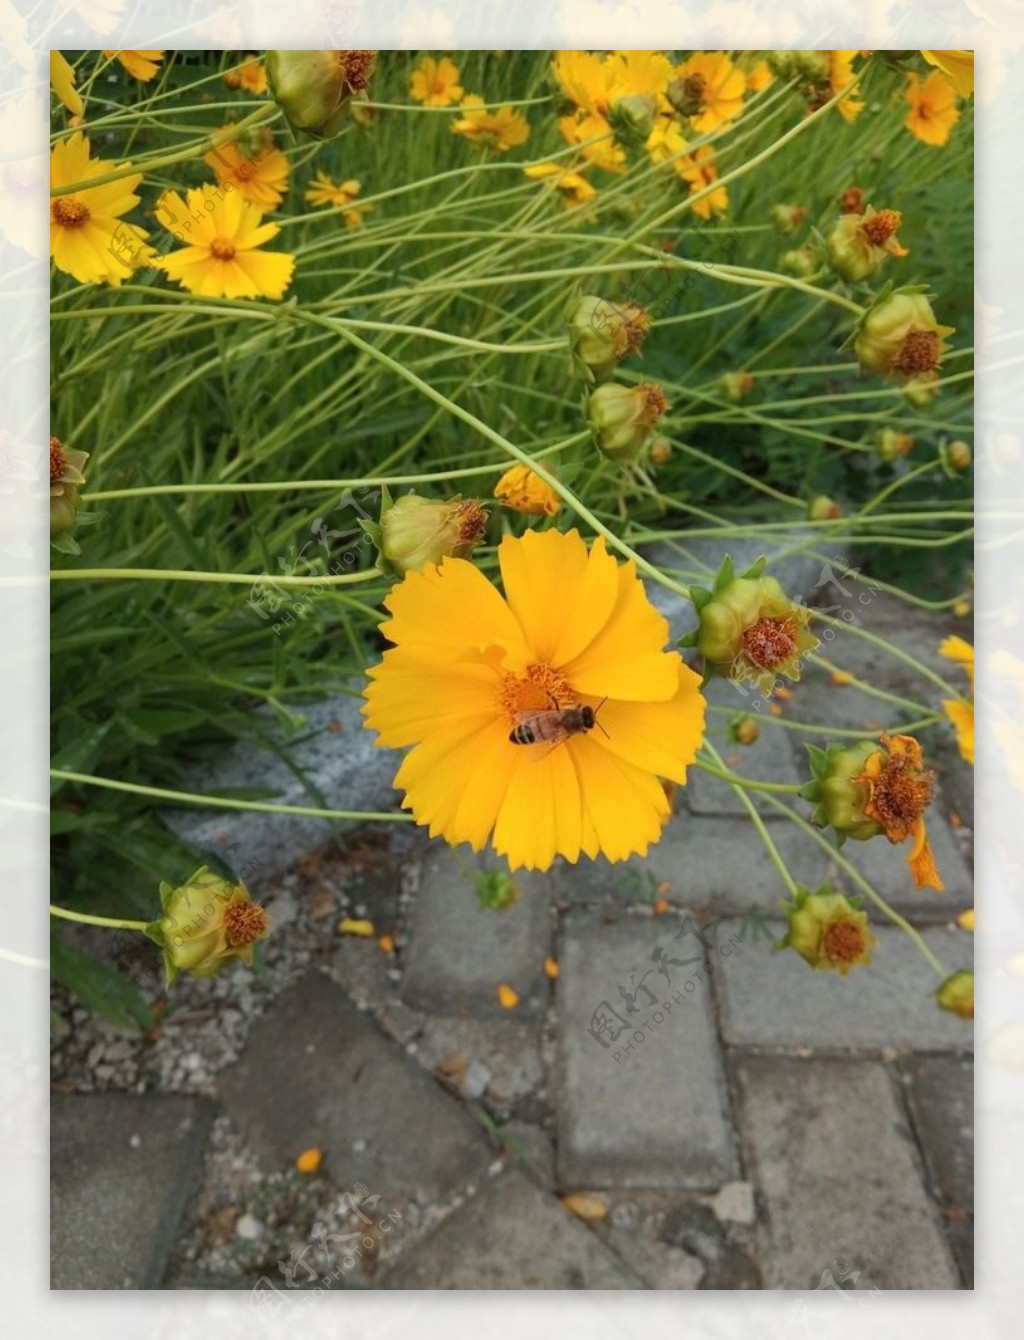 波斯菊花卉照片